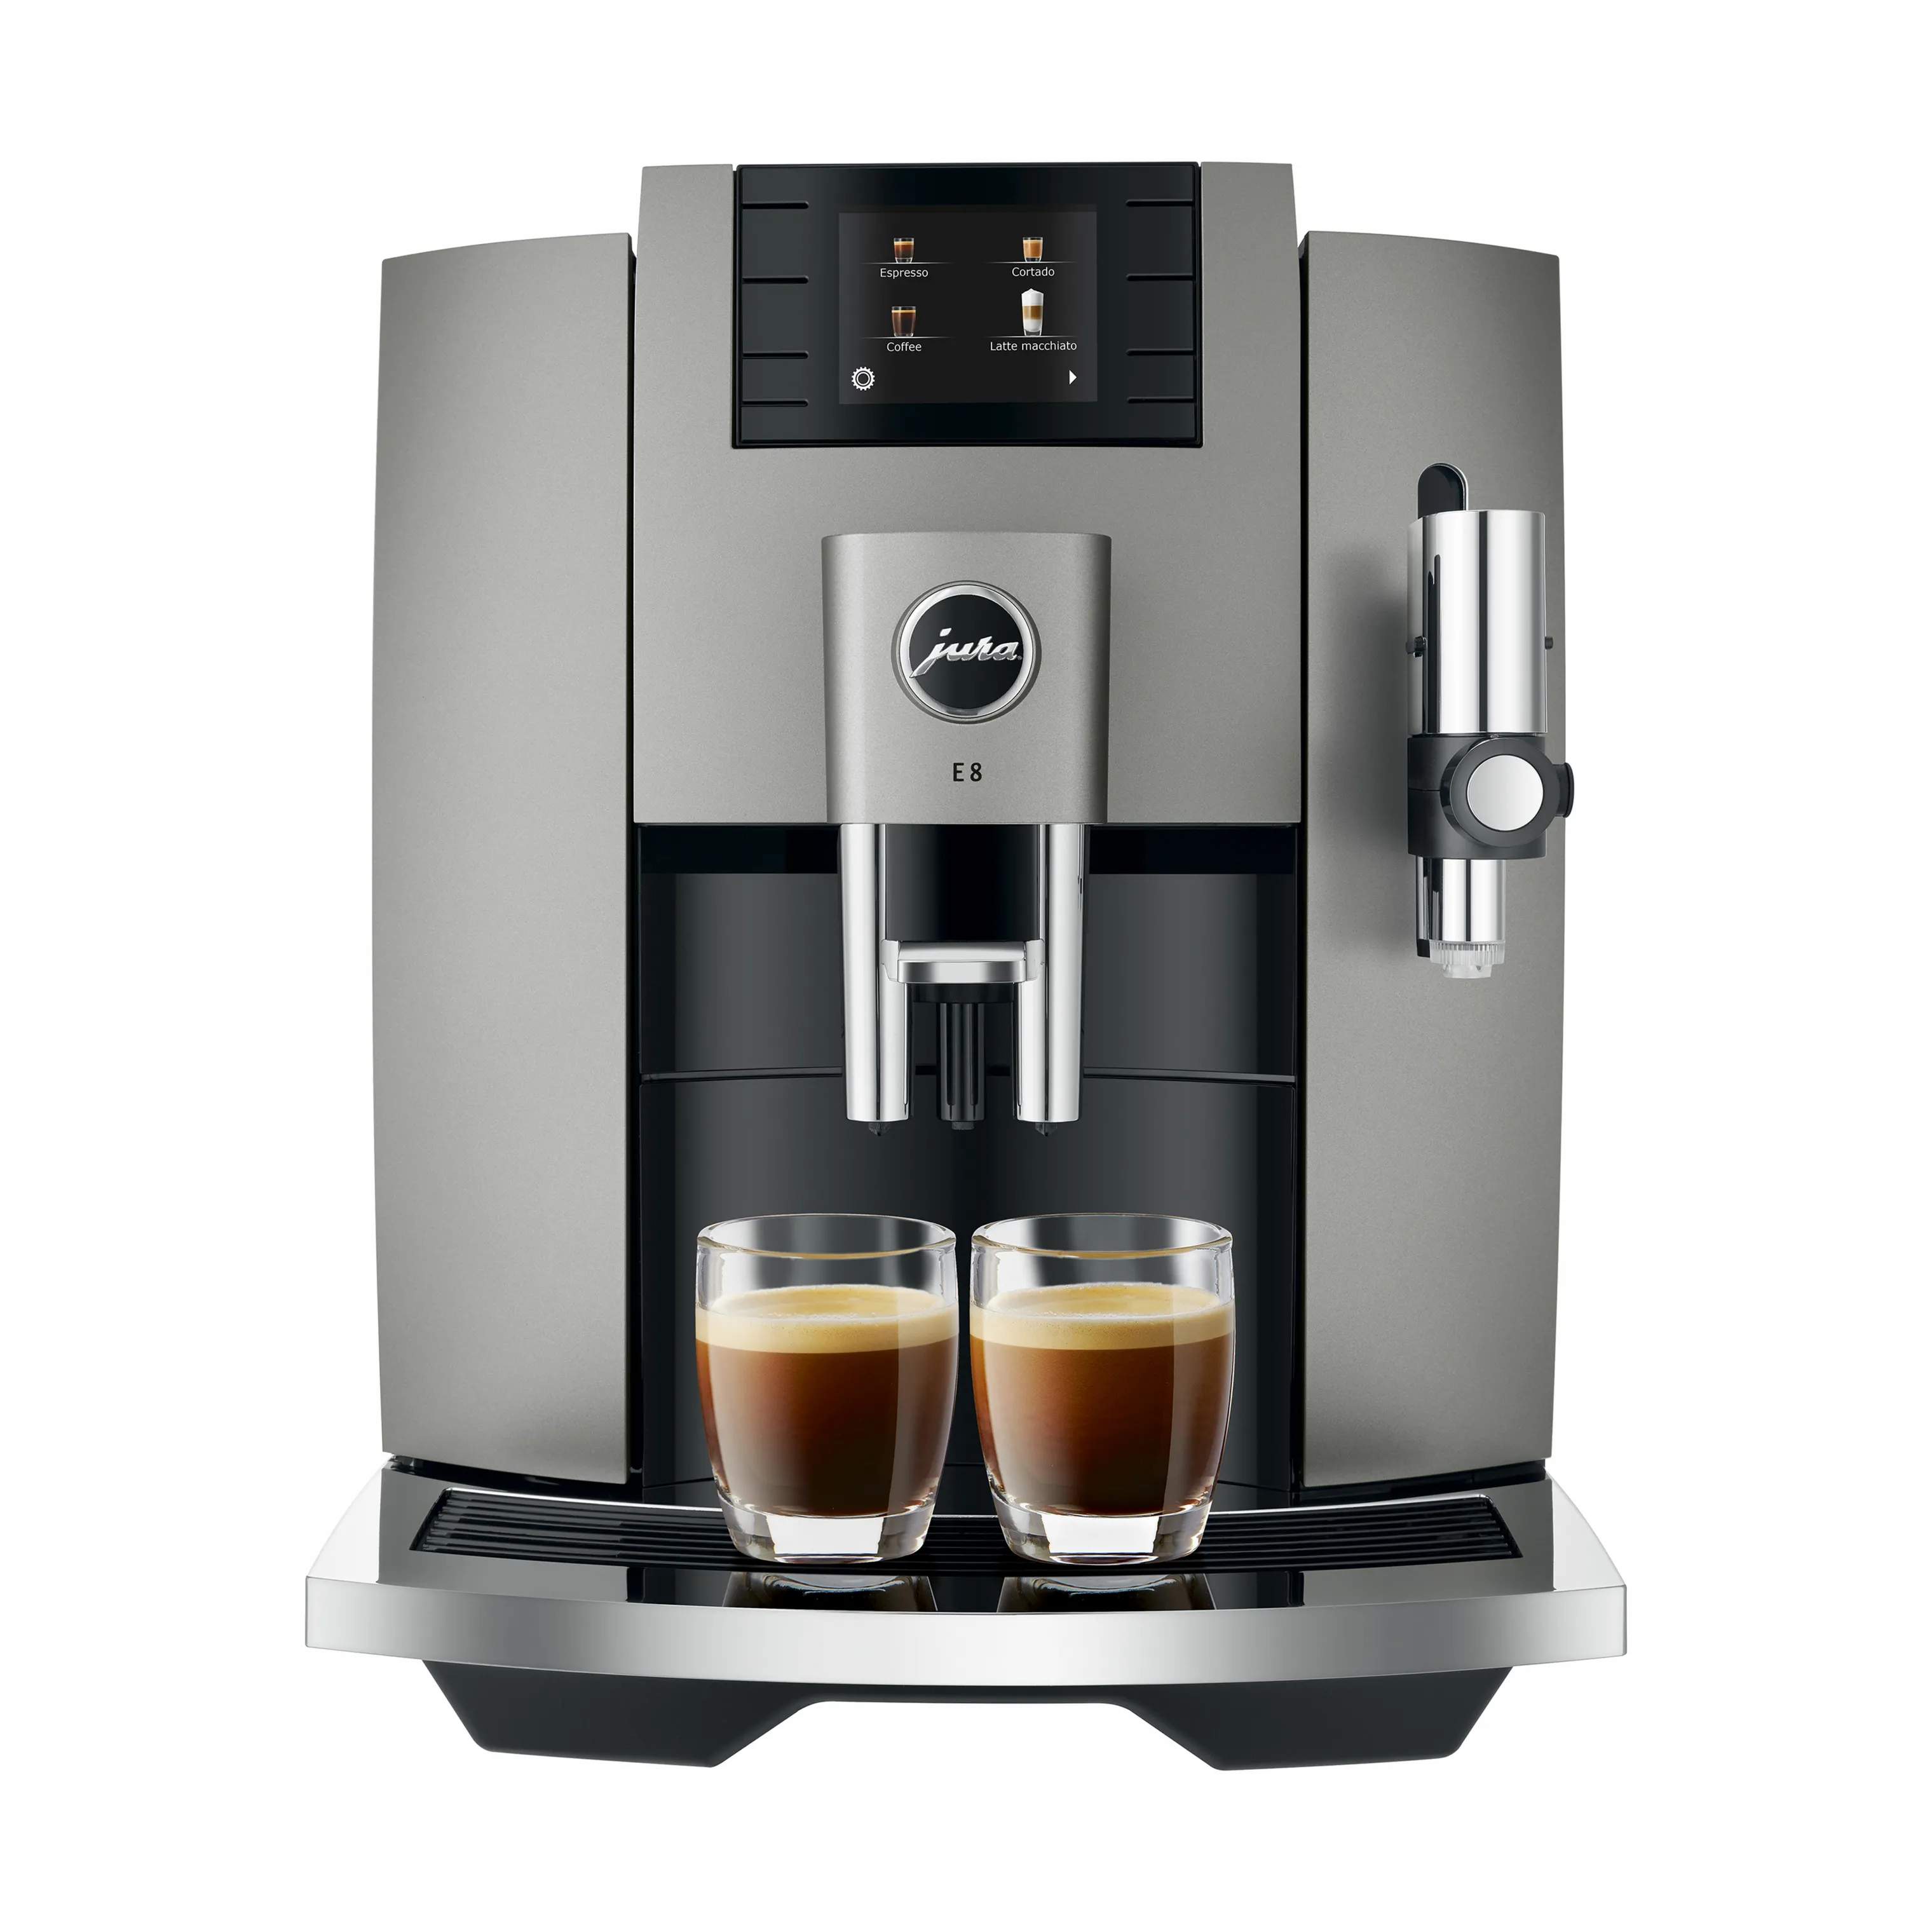 E8 (EB) Kaffemaskine, dark inox, large